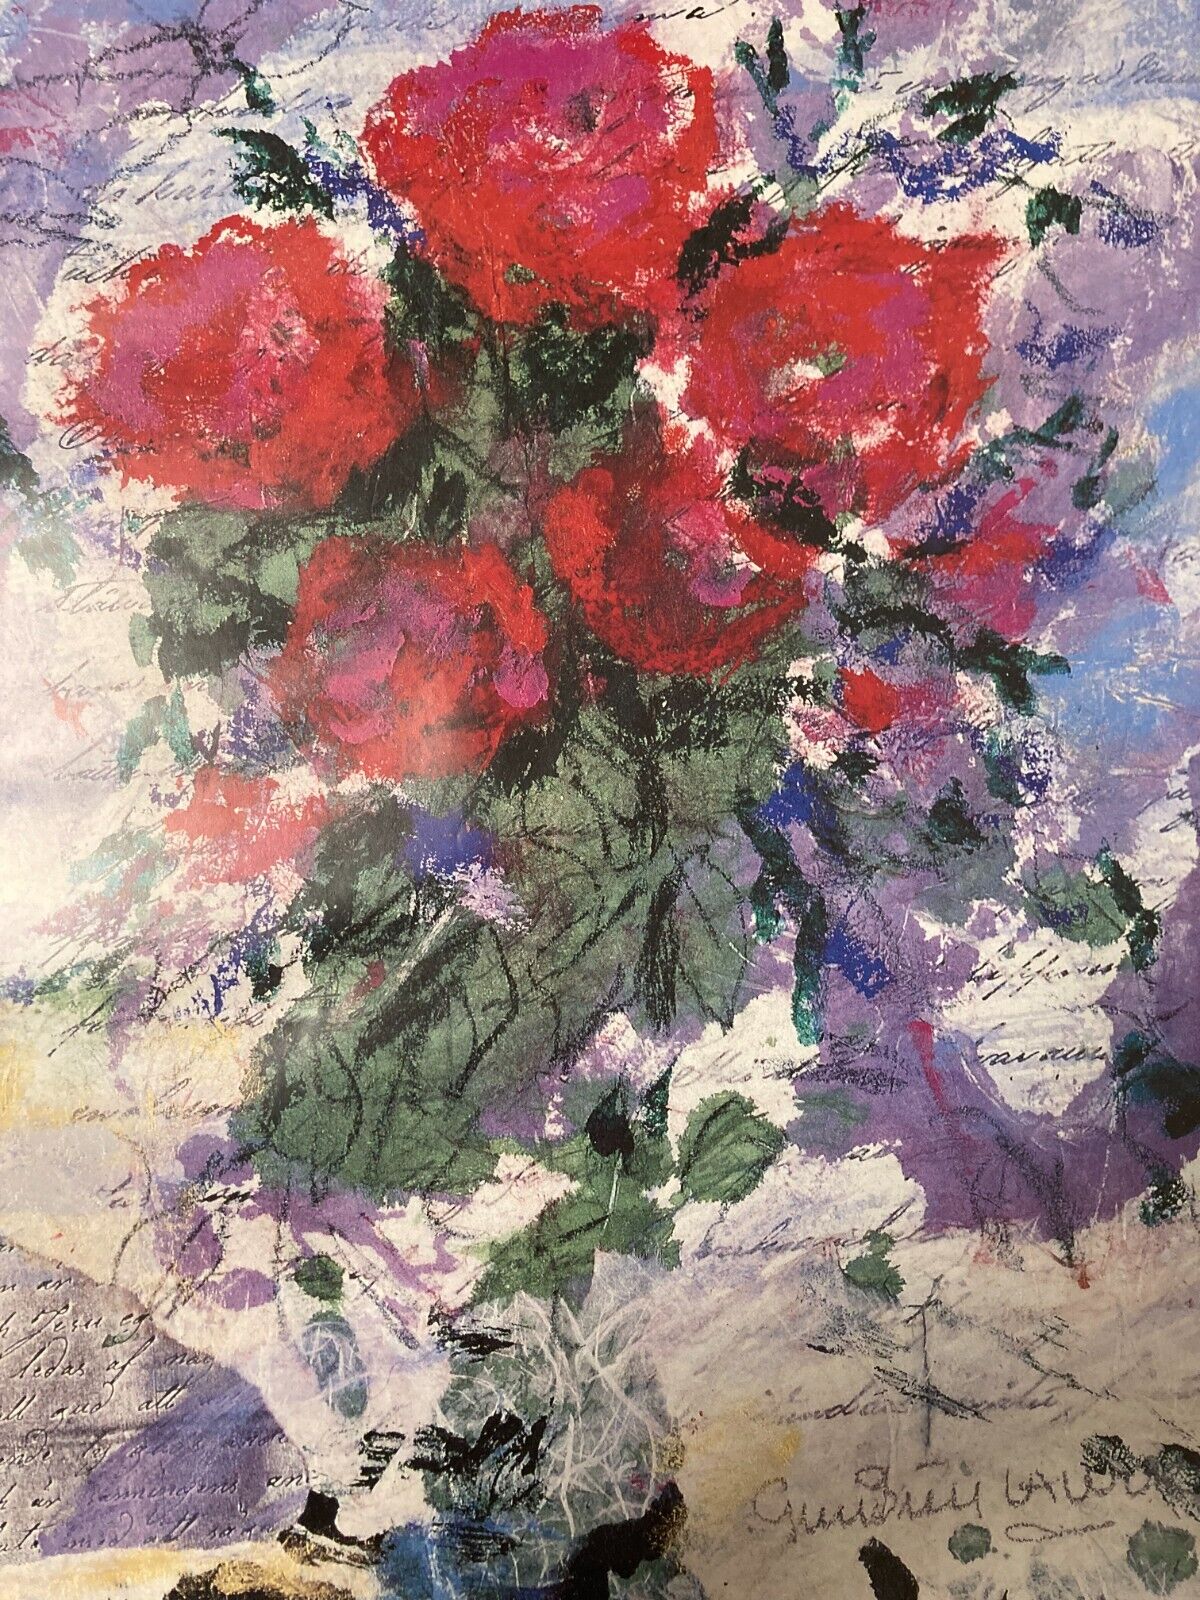 Red Roses by Gun-Britt Lawum Kärlekens fackla brinner an Offset Print 42x55cm